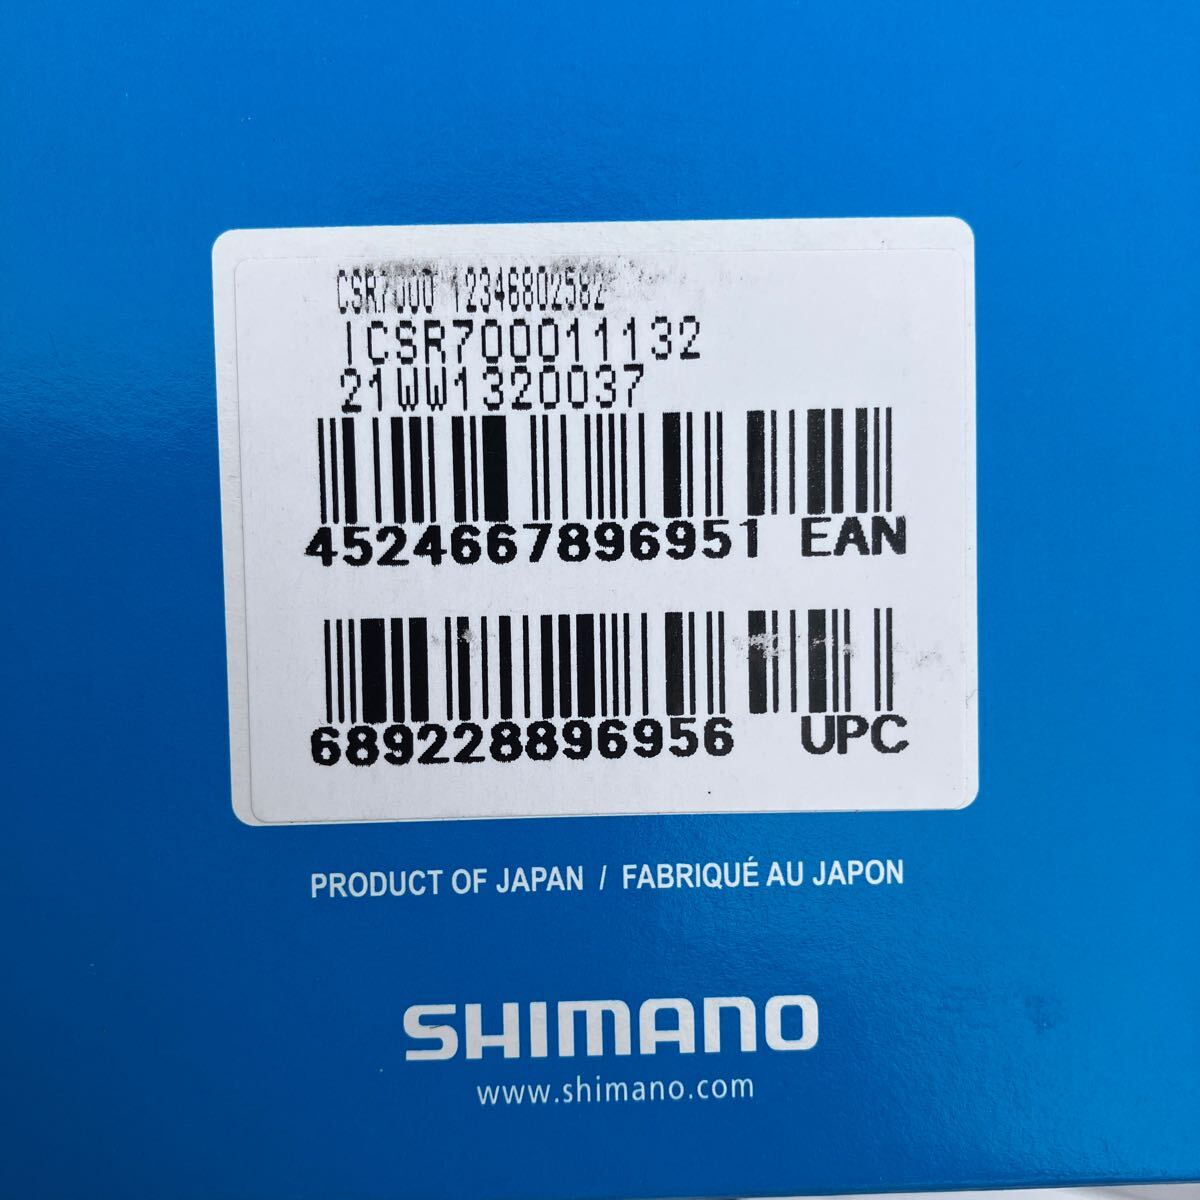 シマノ SHIMANO カセットスプロケット 105 CSーR7000 HGーEV 11S 11ー32T 未使用品_画像7